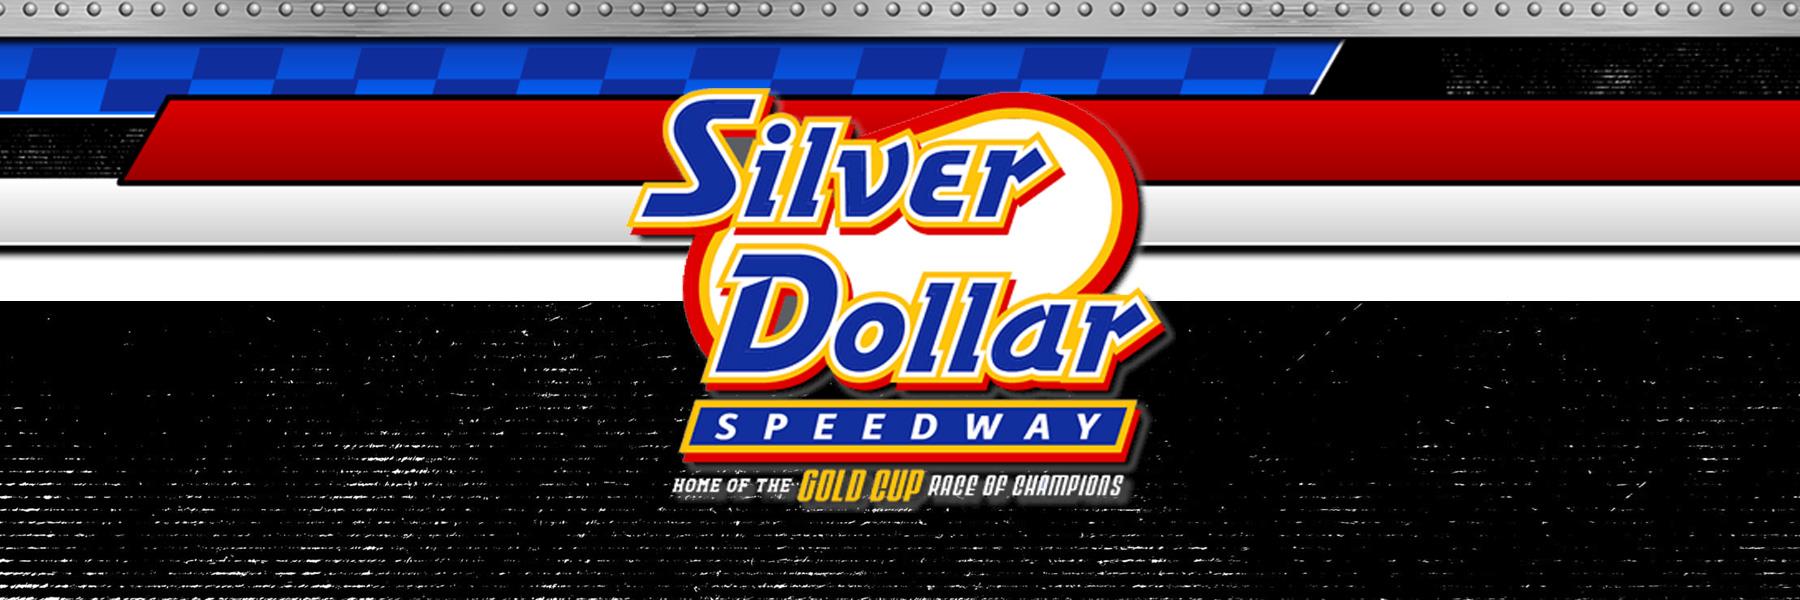 5/10/2019 - Silver Dollar Speedway